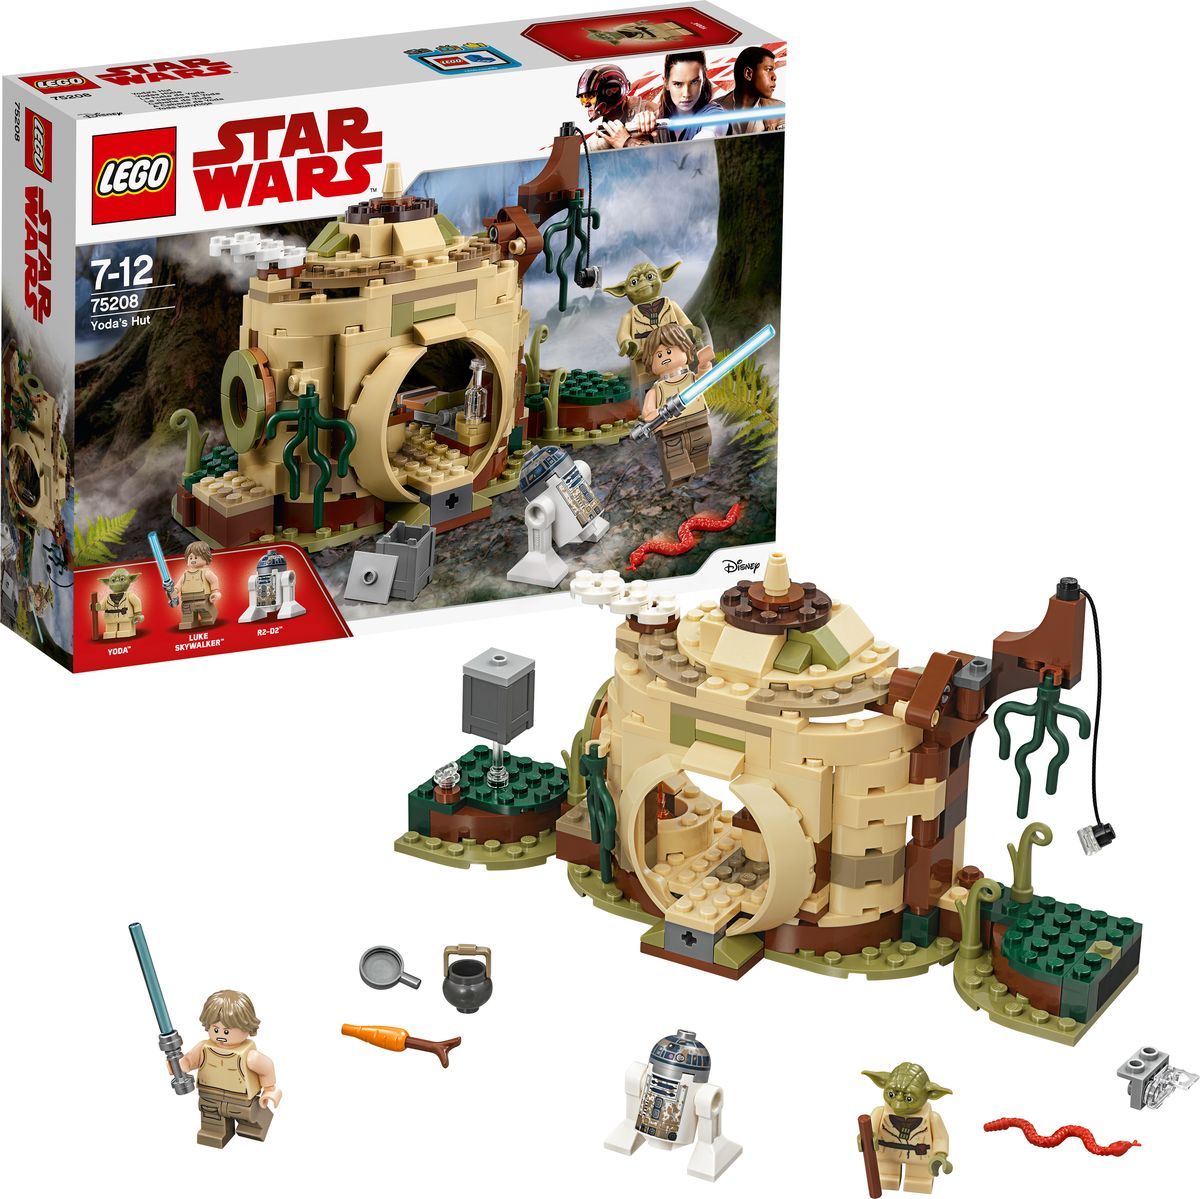 LEGO Star Wars 75208   